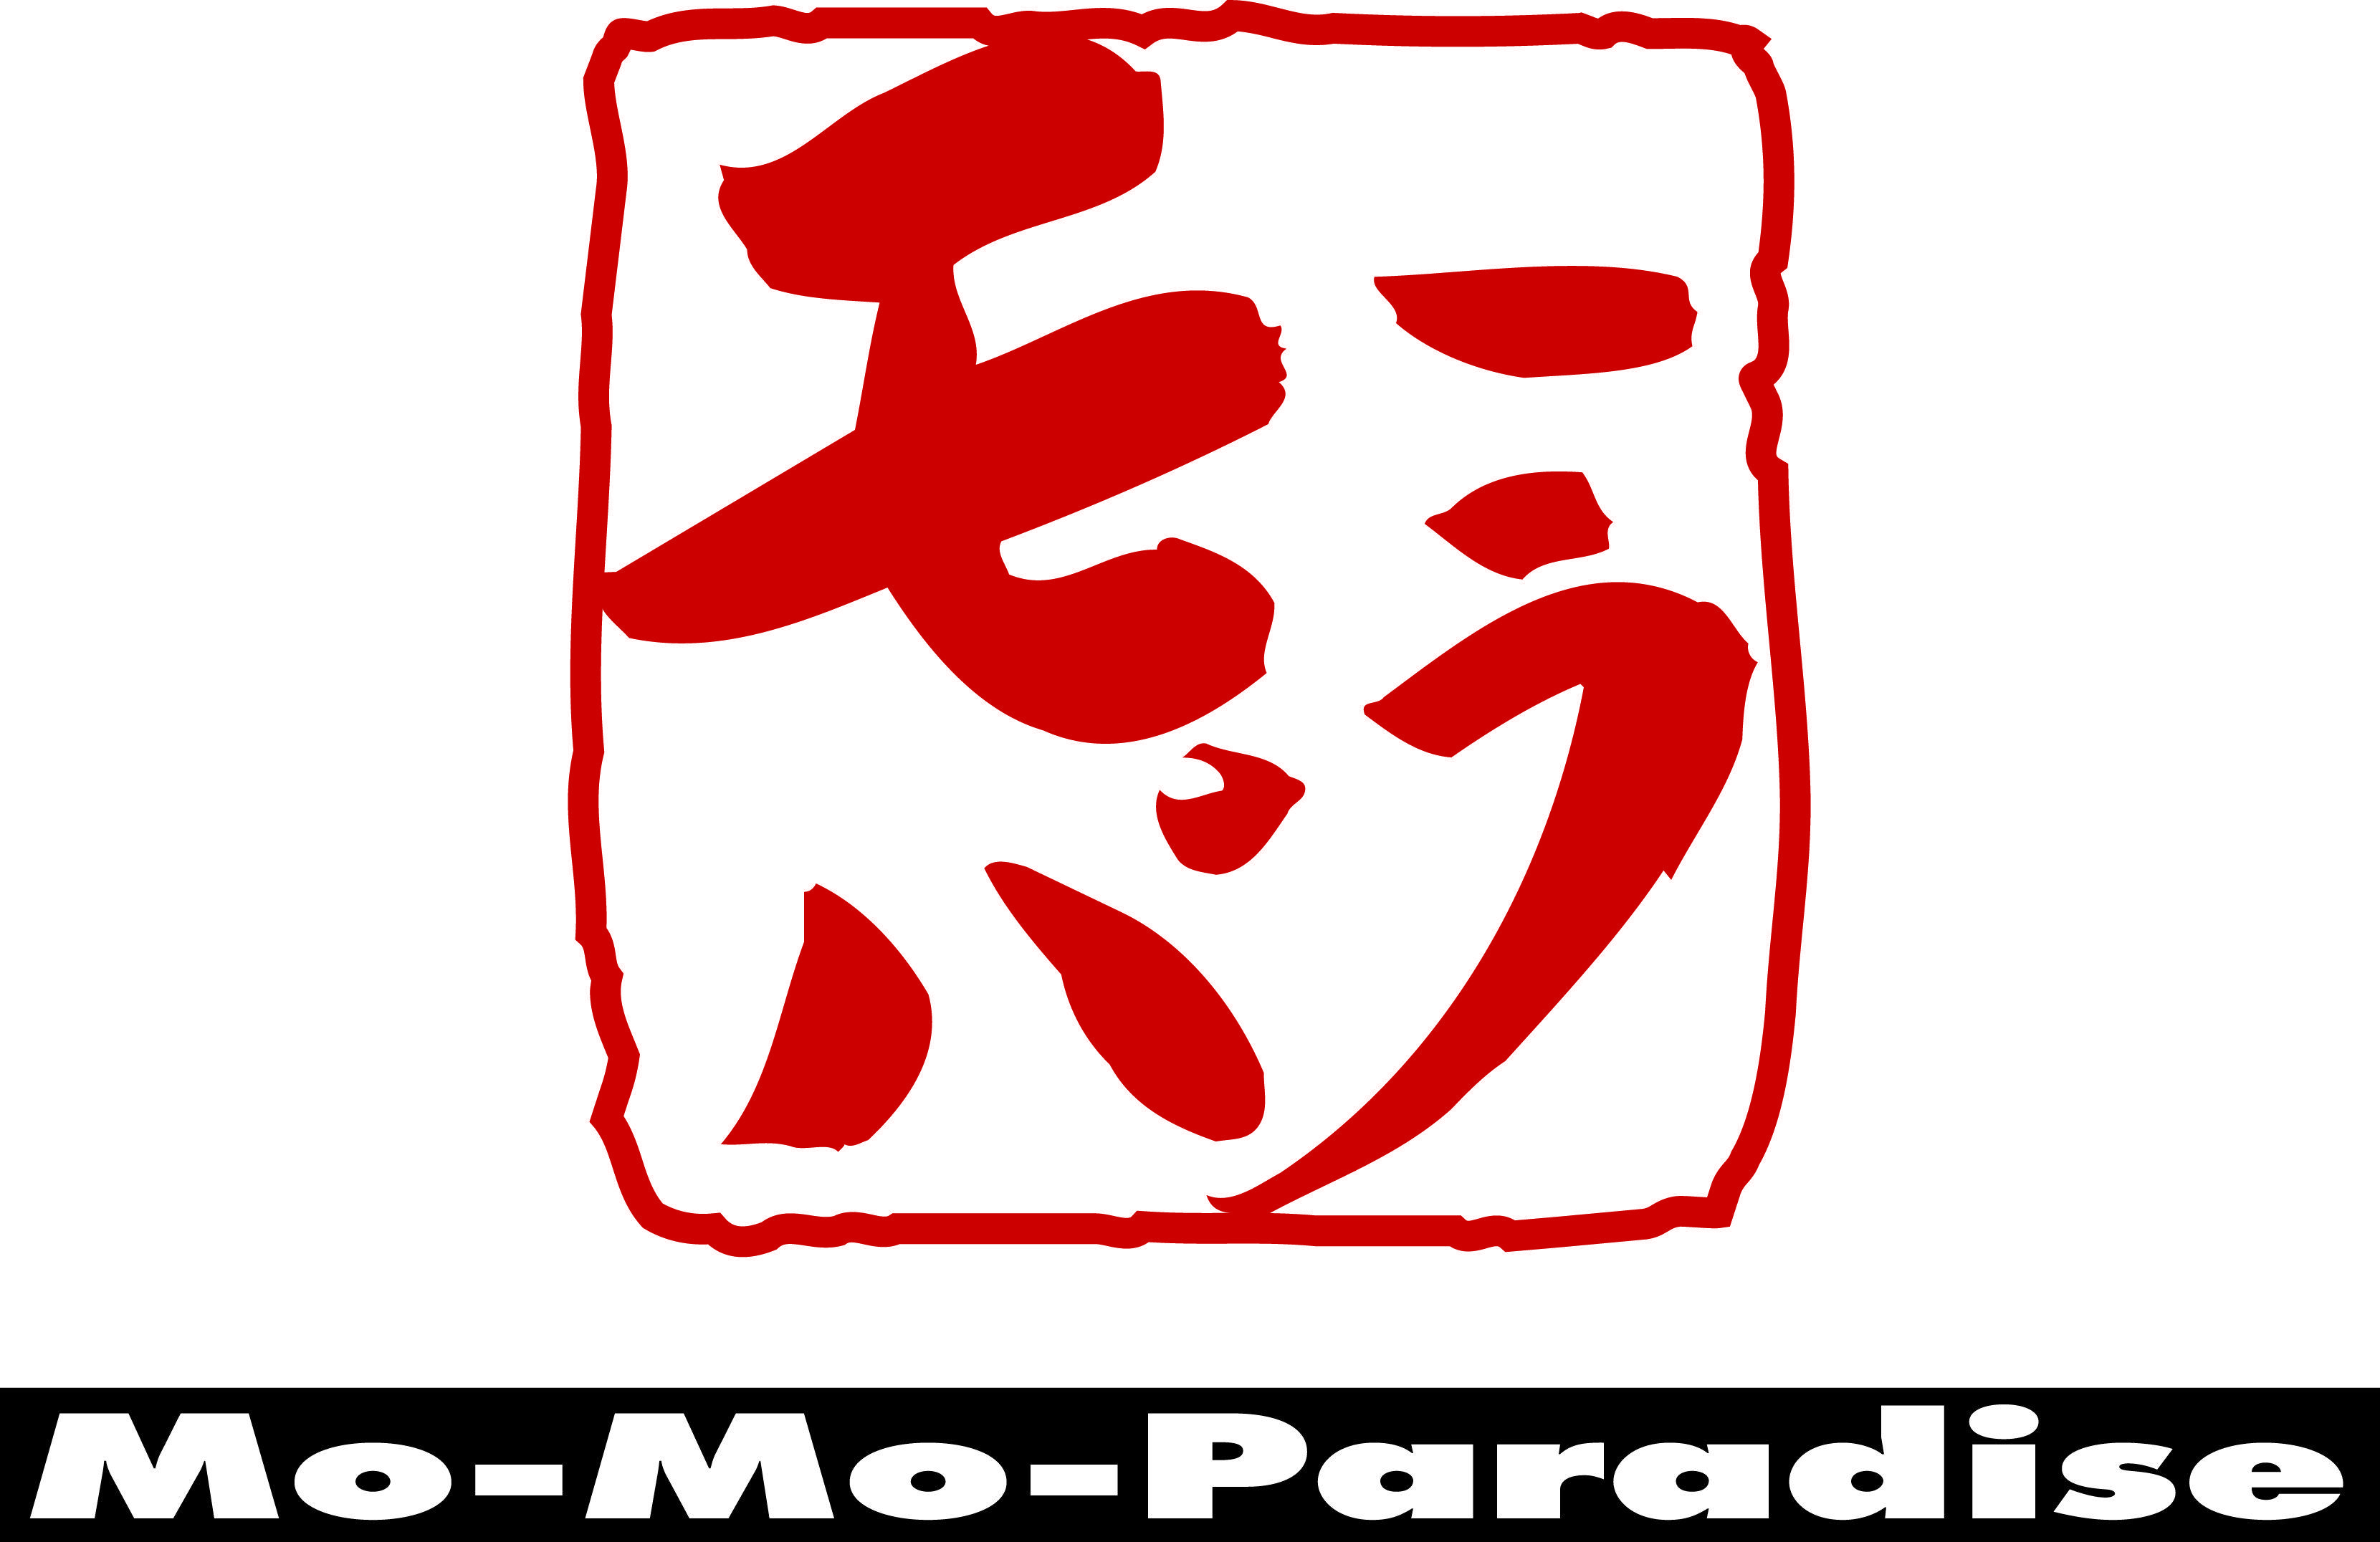 Tomator Paradise Logo - Roasted Tomato Soup | Momo Paradise Indonesia